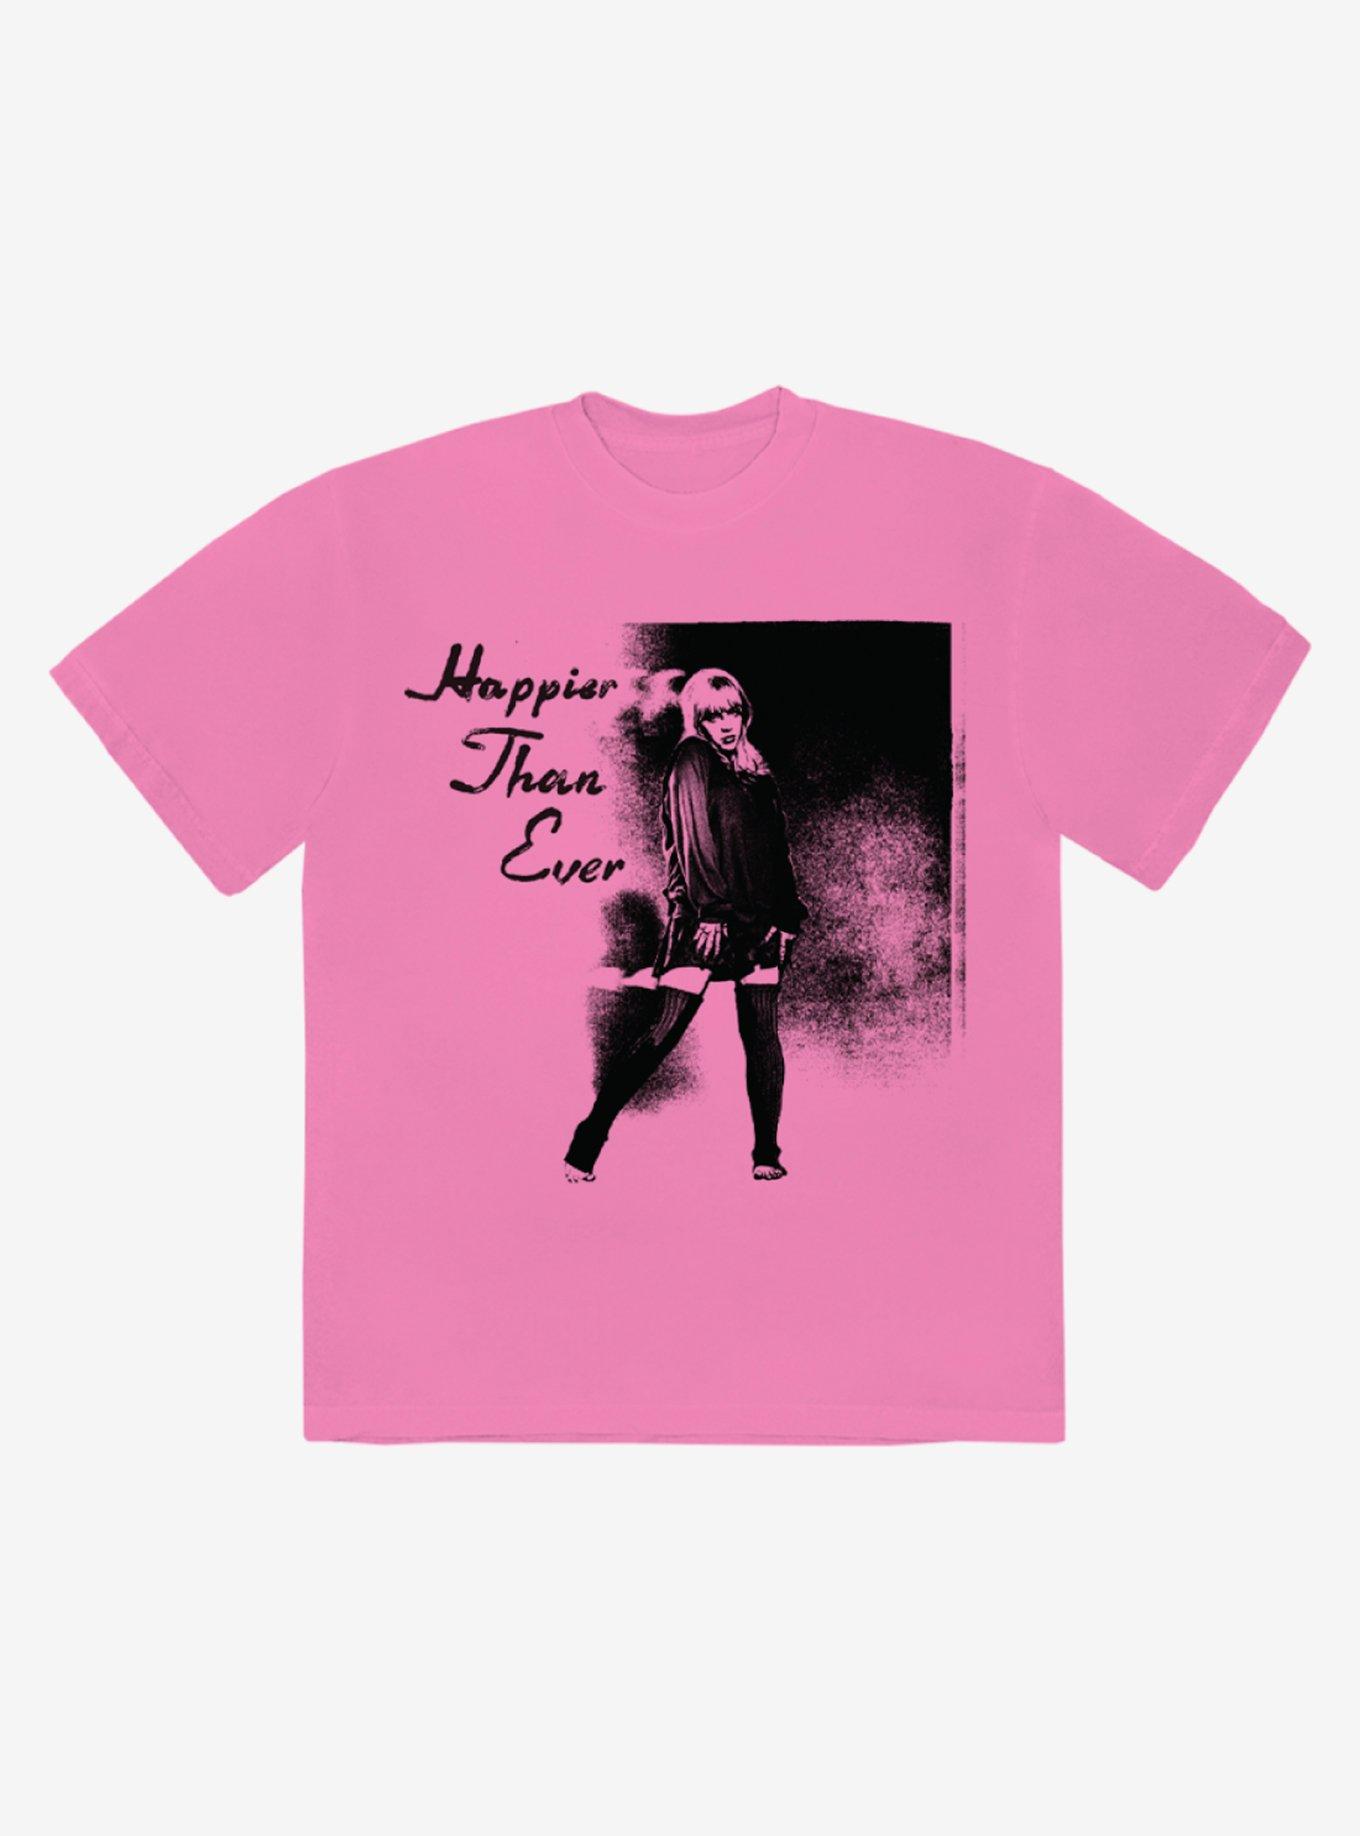 Billie Eilish Happier Than Ever Pink Boyfriend Fit Girls T-Shirt